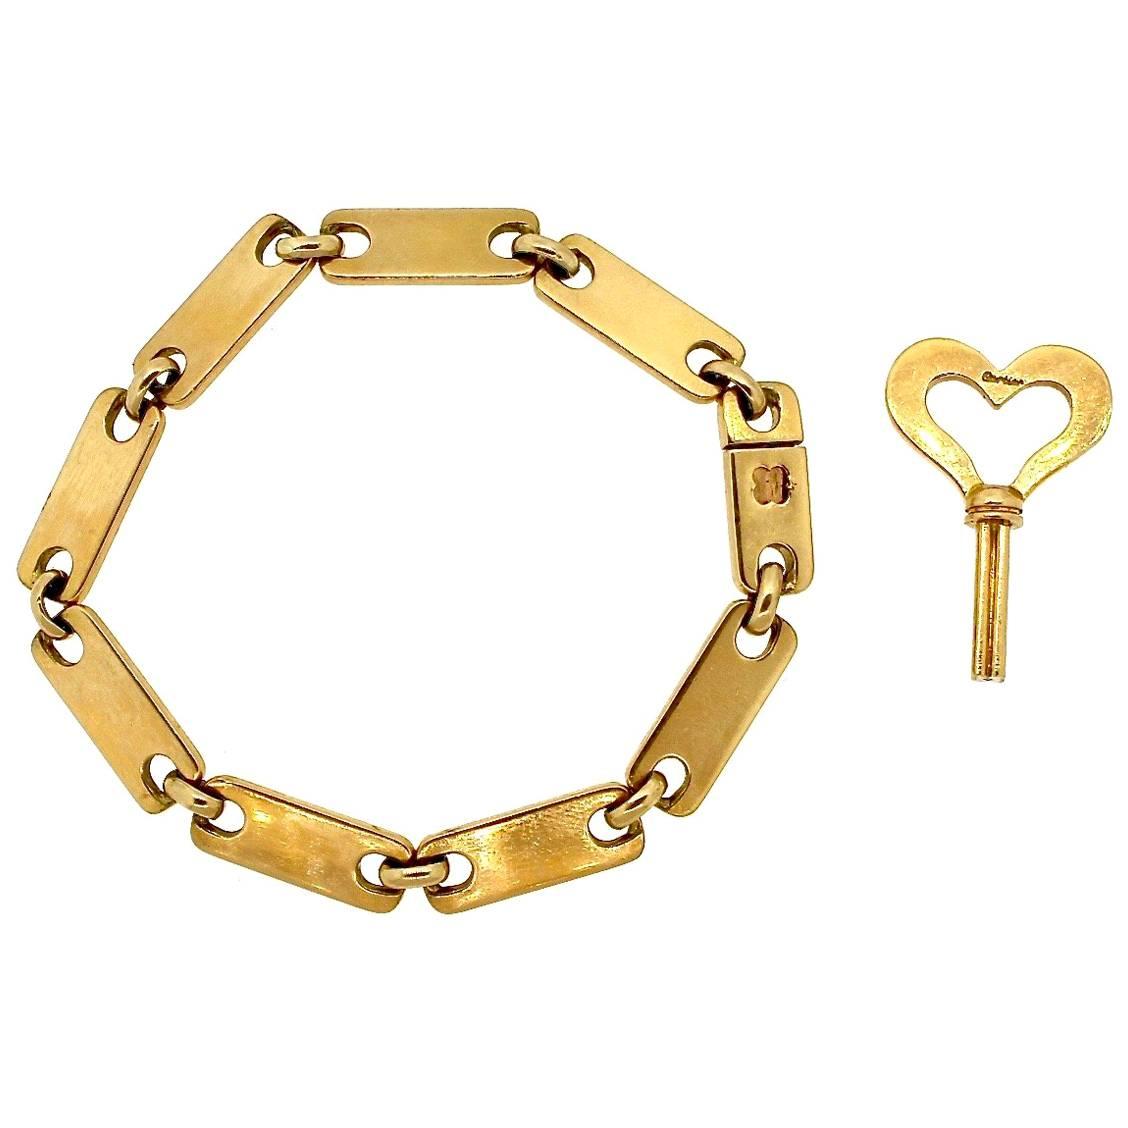 Vintage Cartier Midcentury Gold Link Bracelet with Key